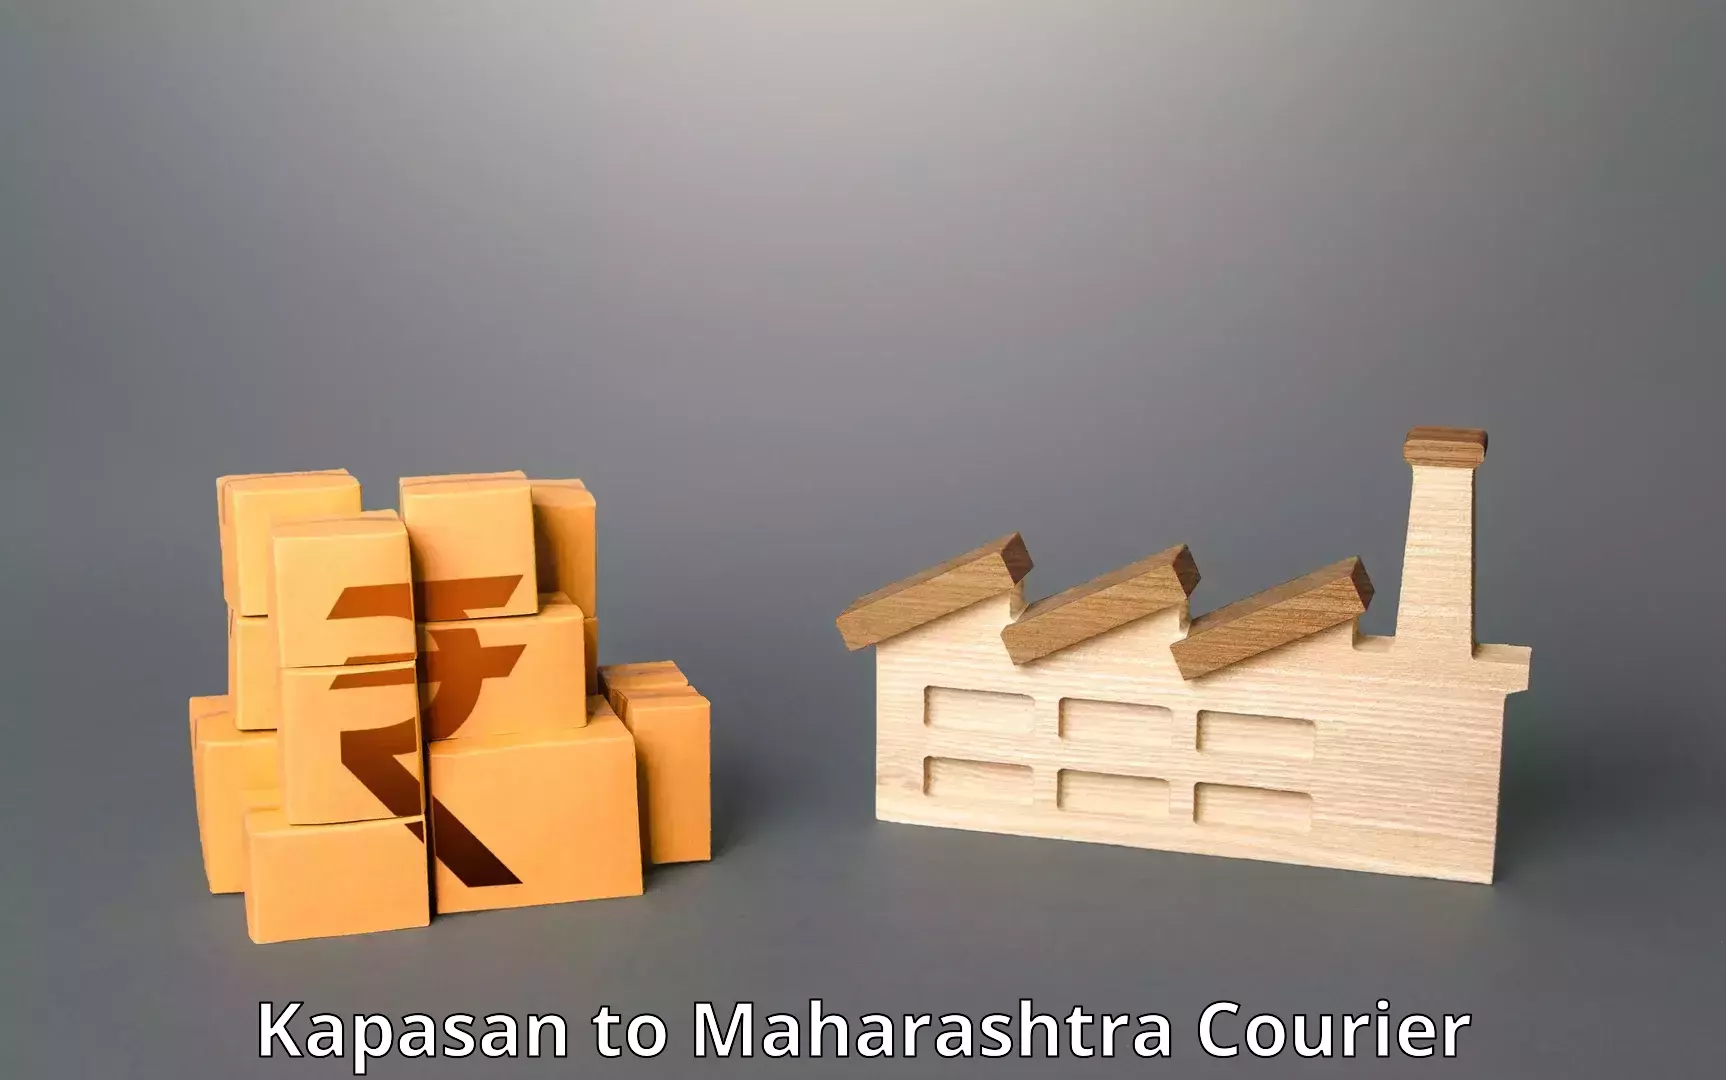 Comprehensive shipping network Kapasan to Dharmabad